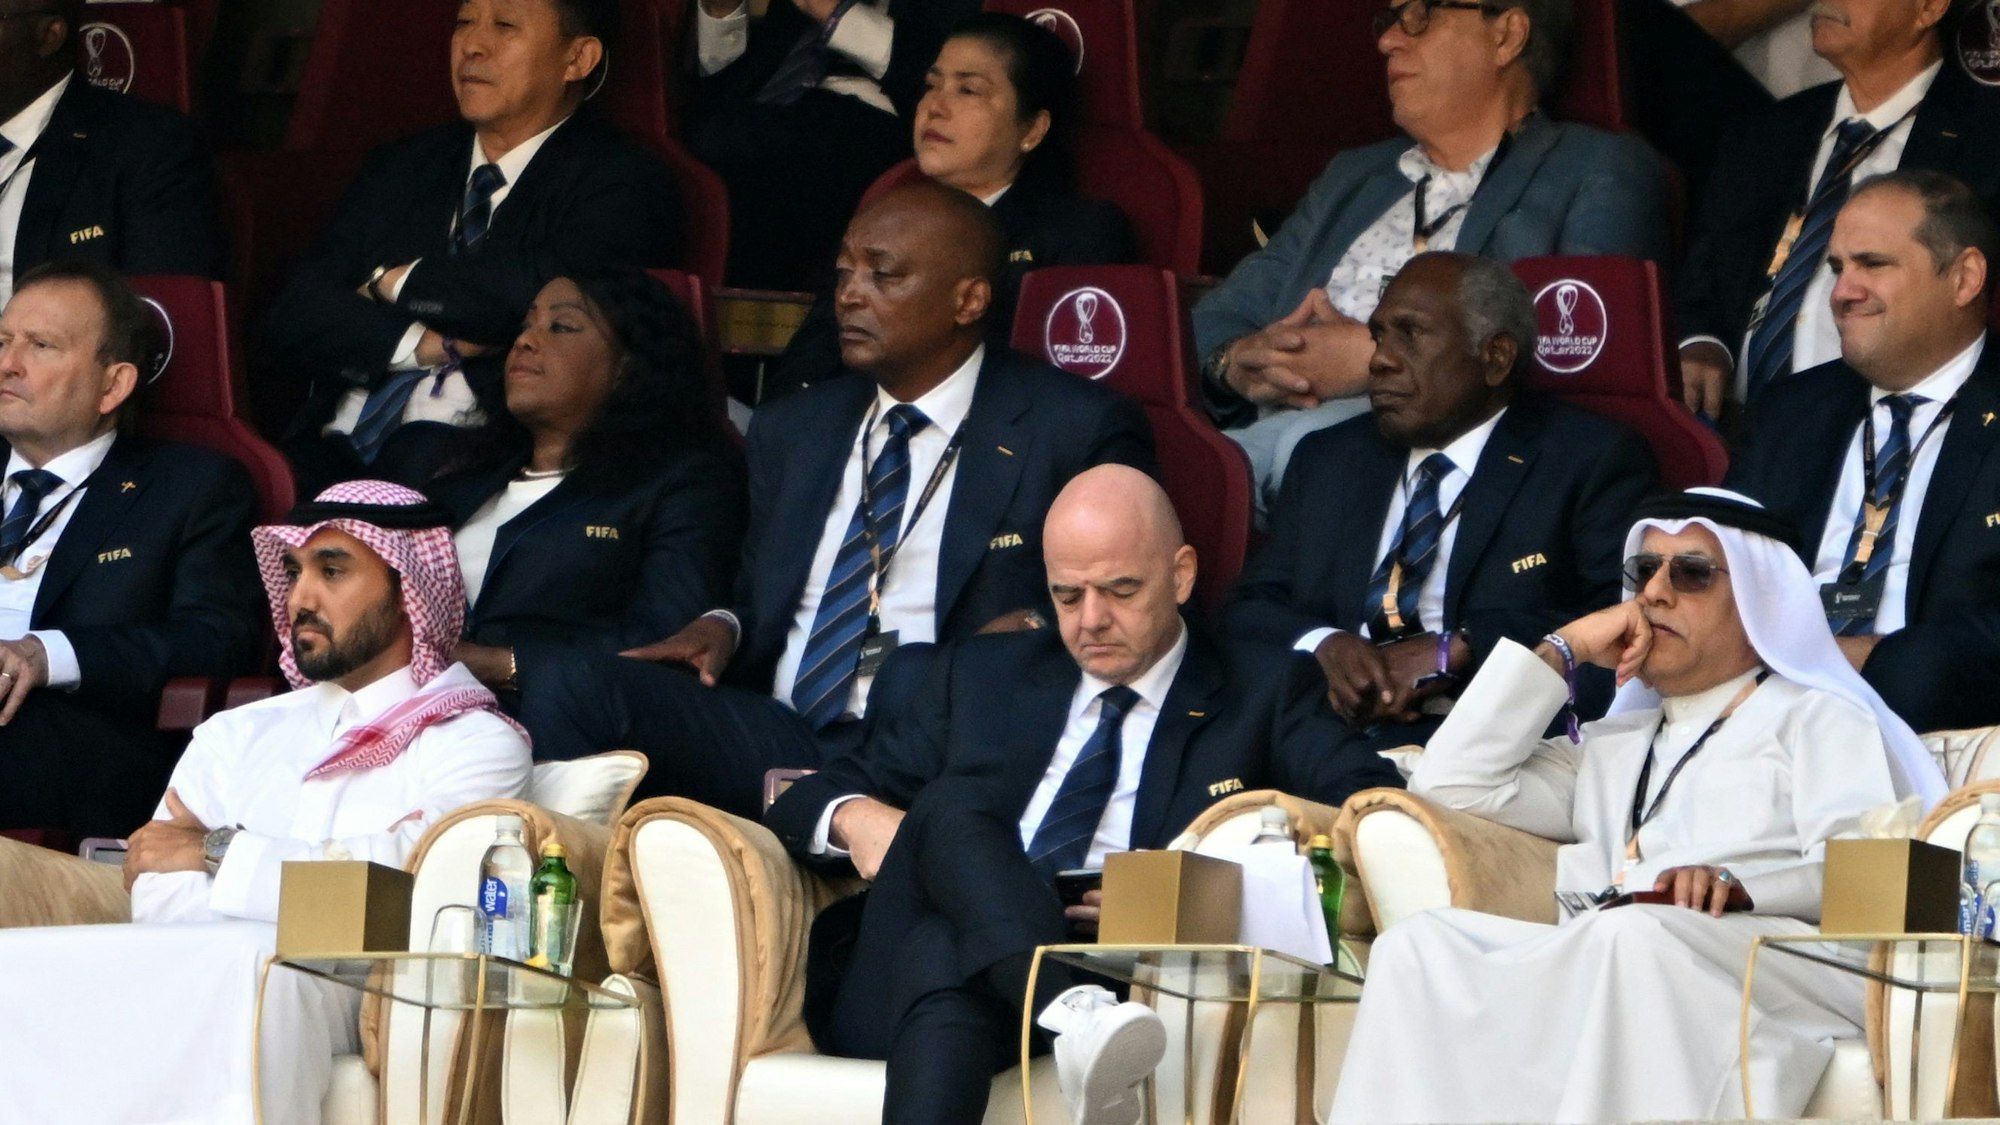 FIFA-Präsident Gianni Infantino (M) auf der Tribüne, er ist umringt von Kataris und Mitgliedern der Fifa.